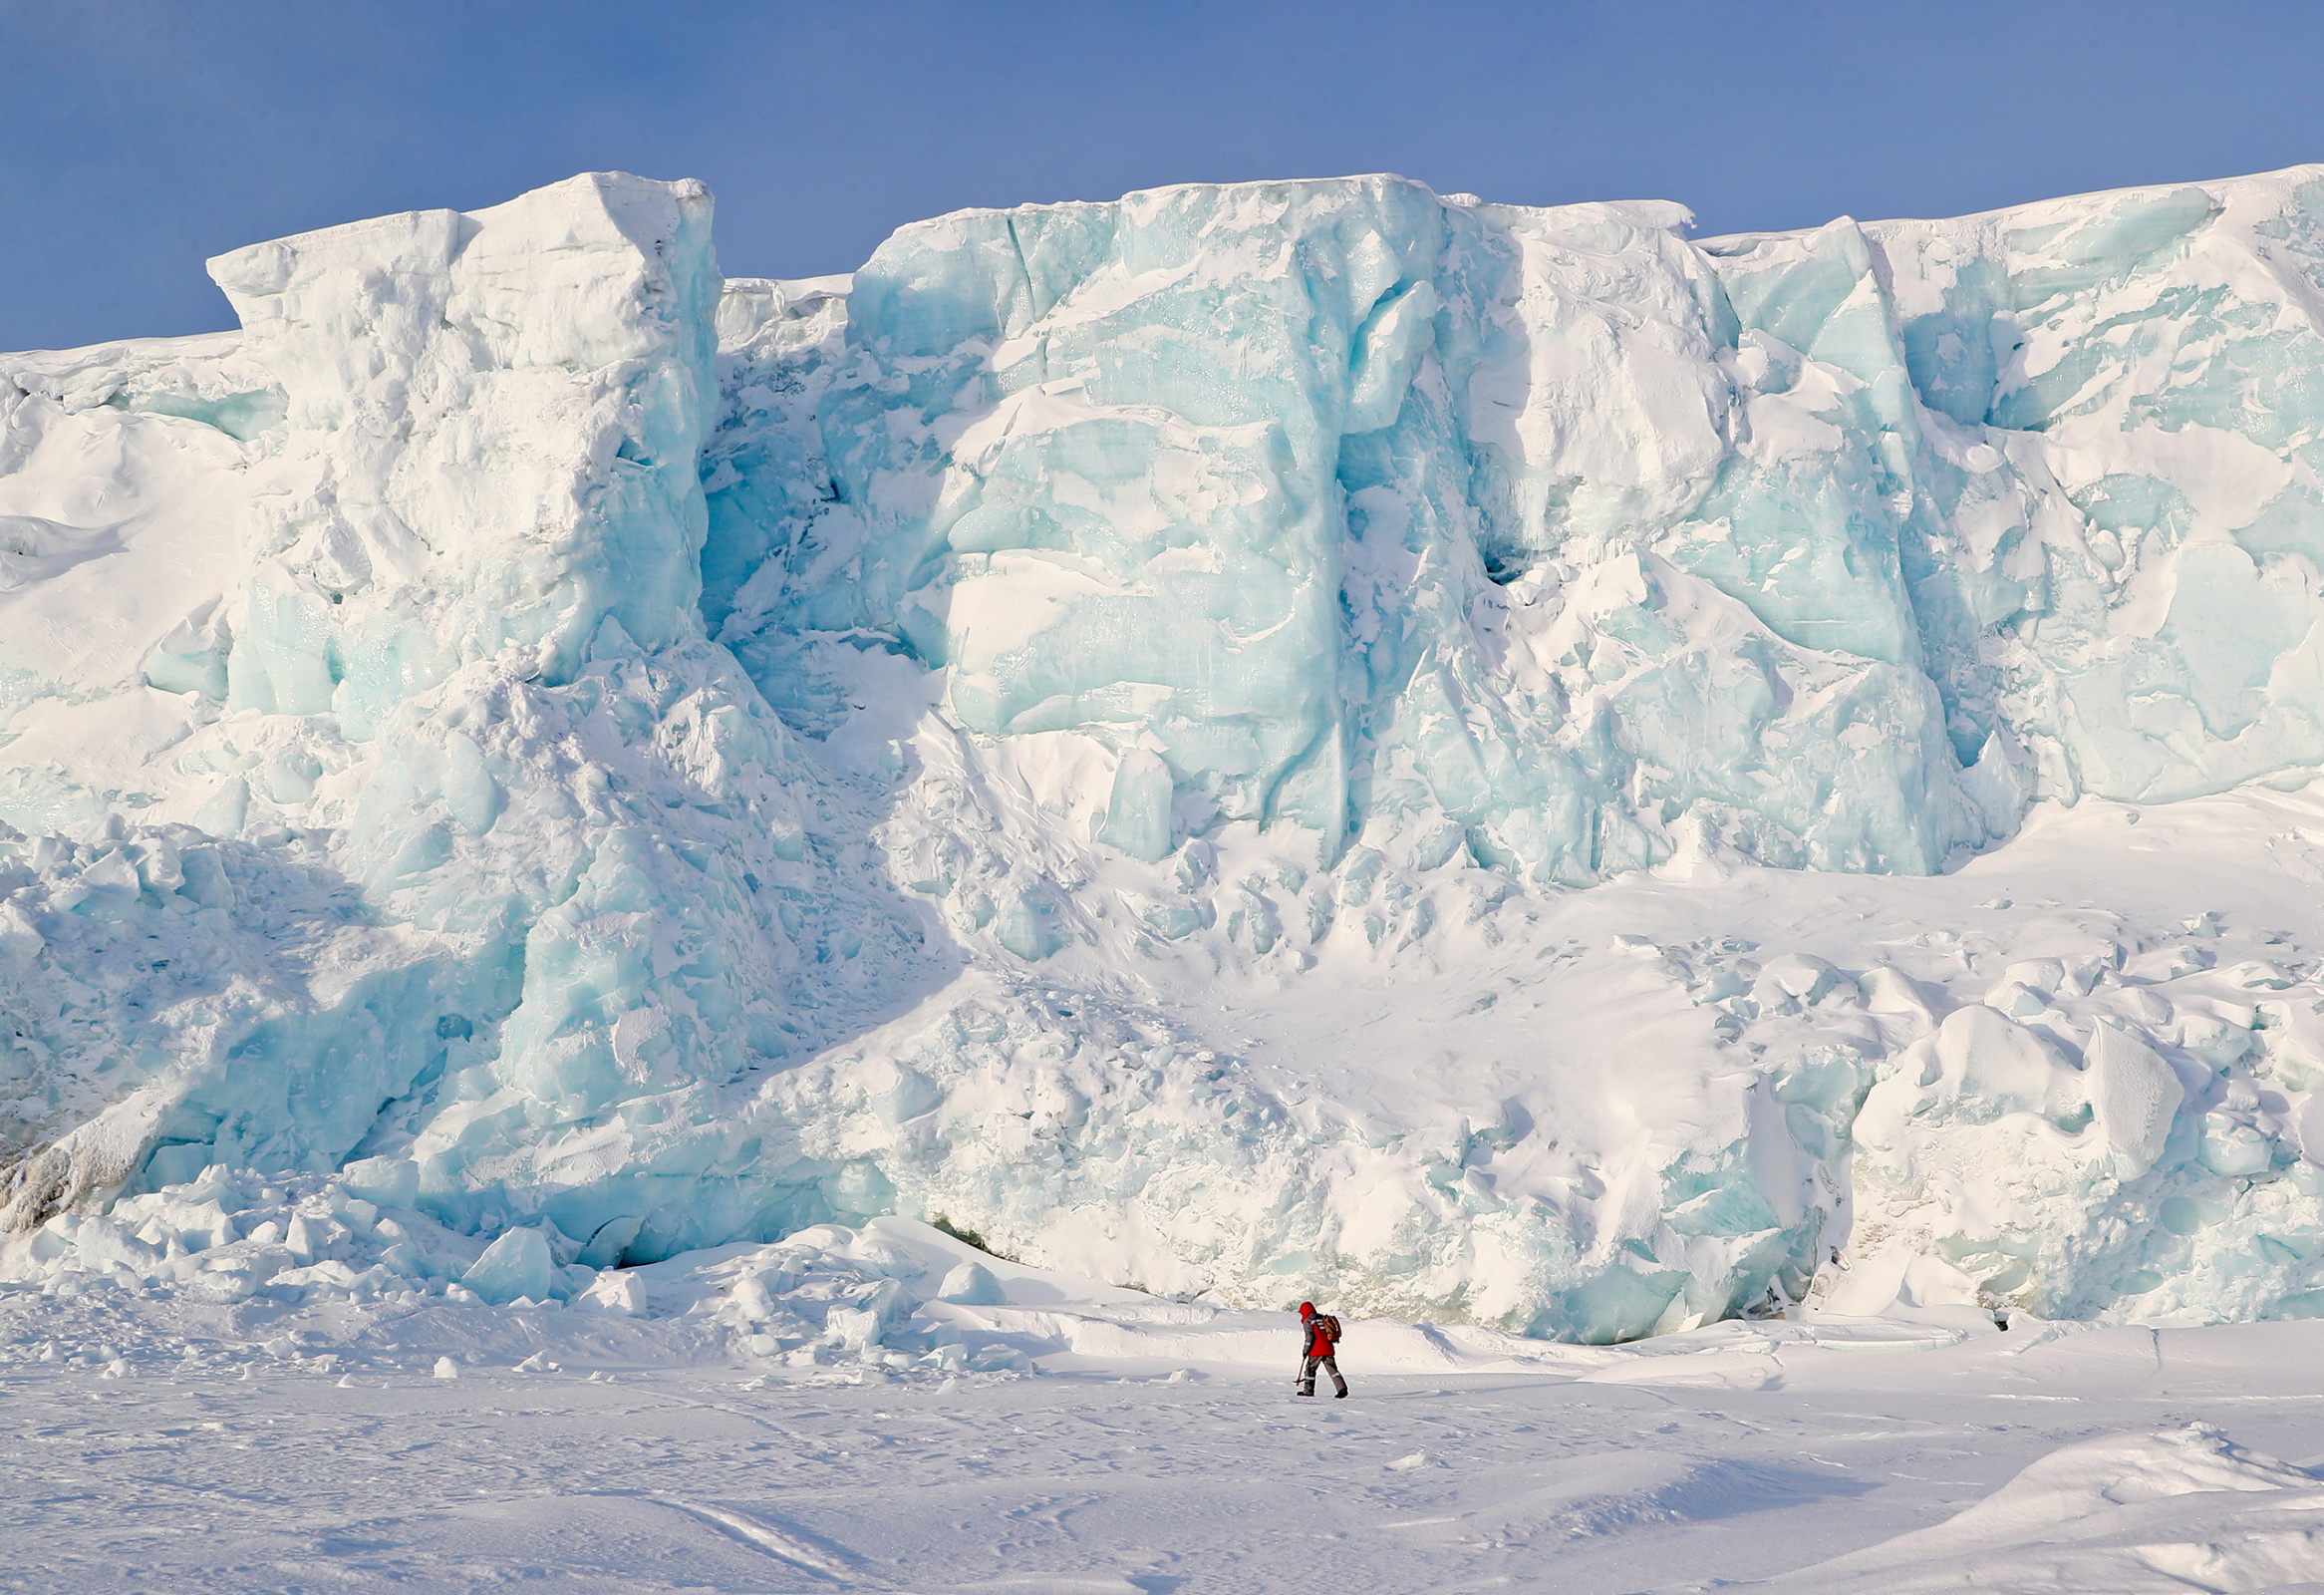 Мощь Арктики может стать иллюзией, если человек не учтёт печальный опыт экономического освоения новых территорий. Фото: Гавриил Григоров